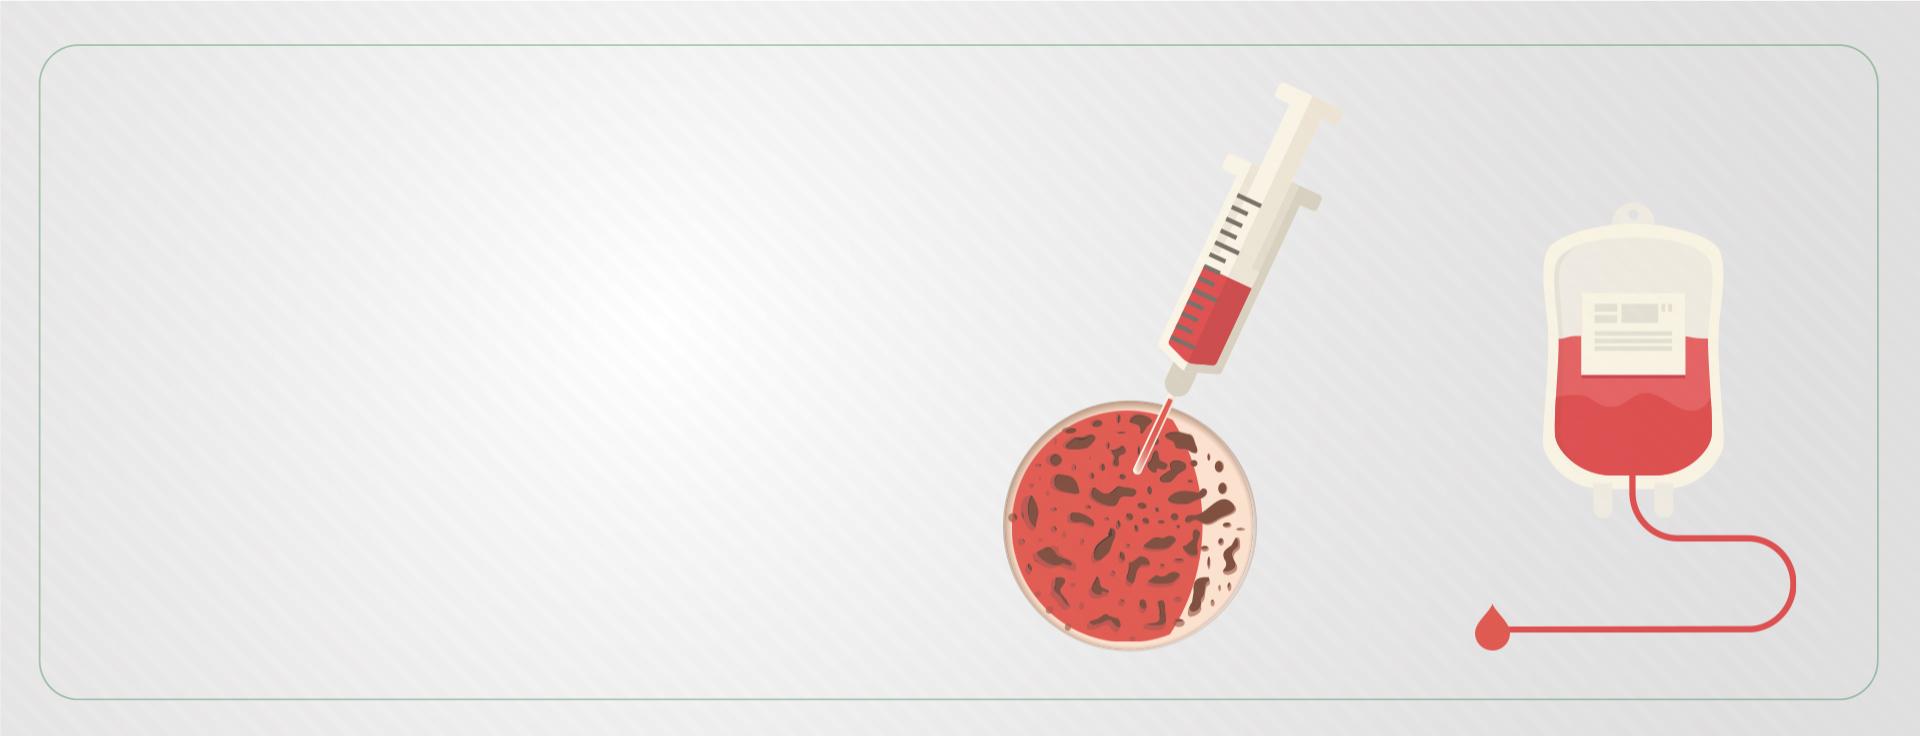 Ilustração com fundo branco e uma bolsa de sangue vermelha, além de uma seringa espetada numa célula vermelha